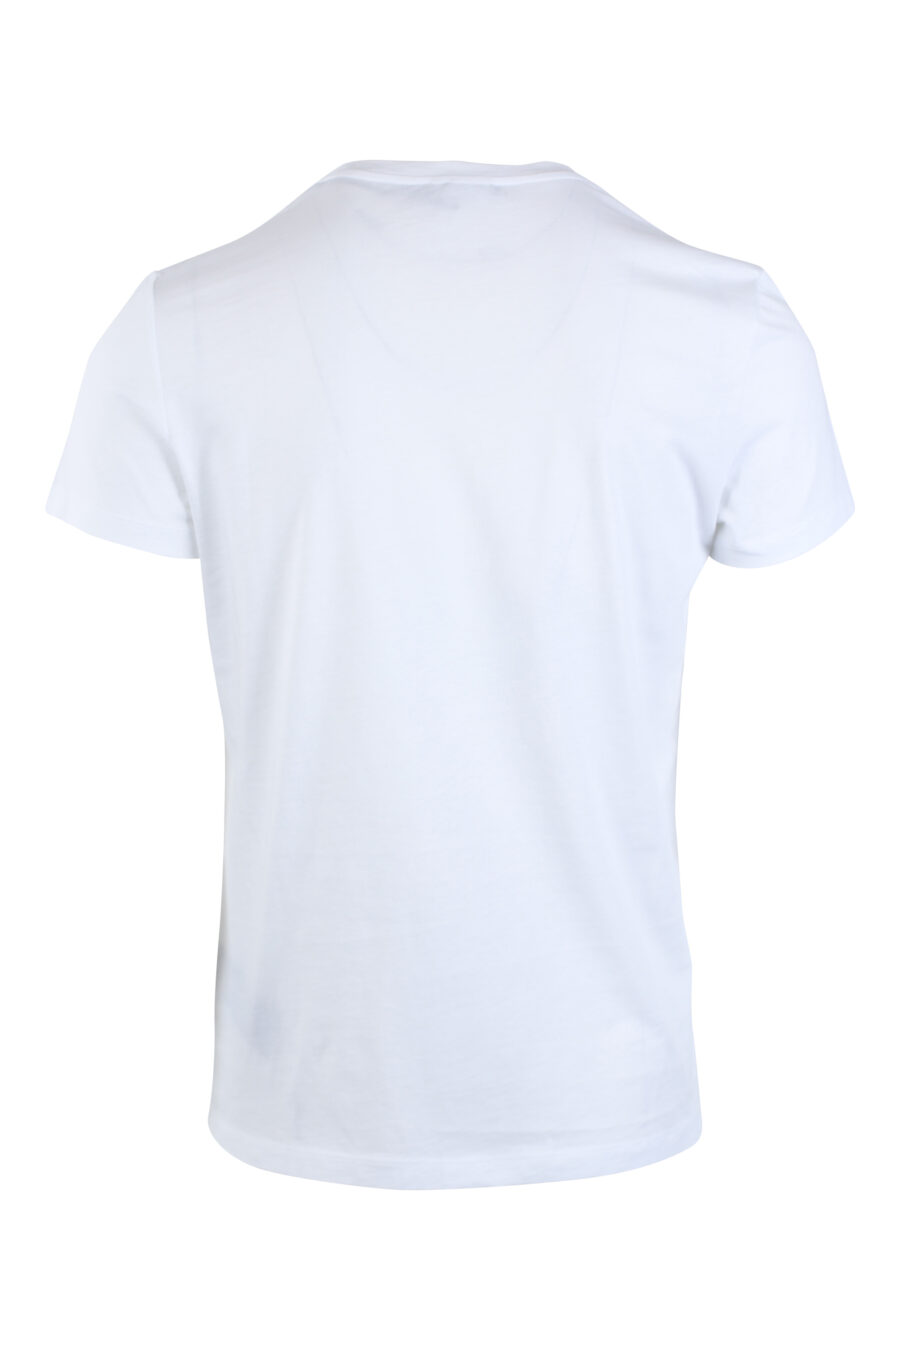 Balmain - Camiseta blanca con maxilogo dorado 